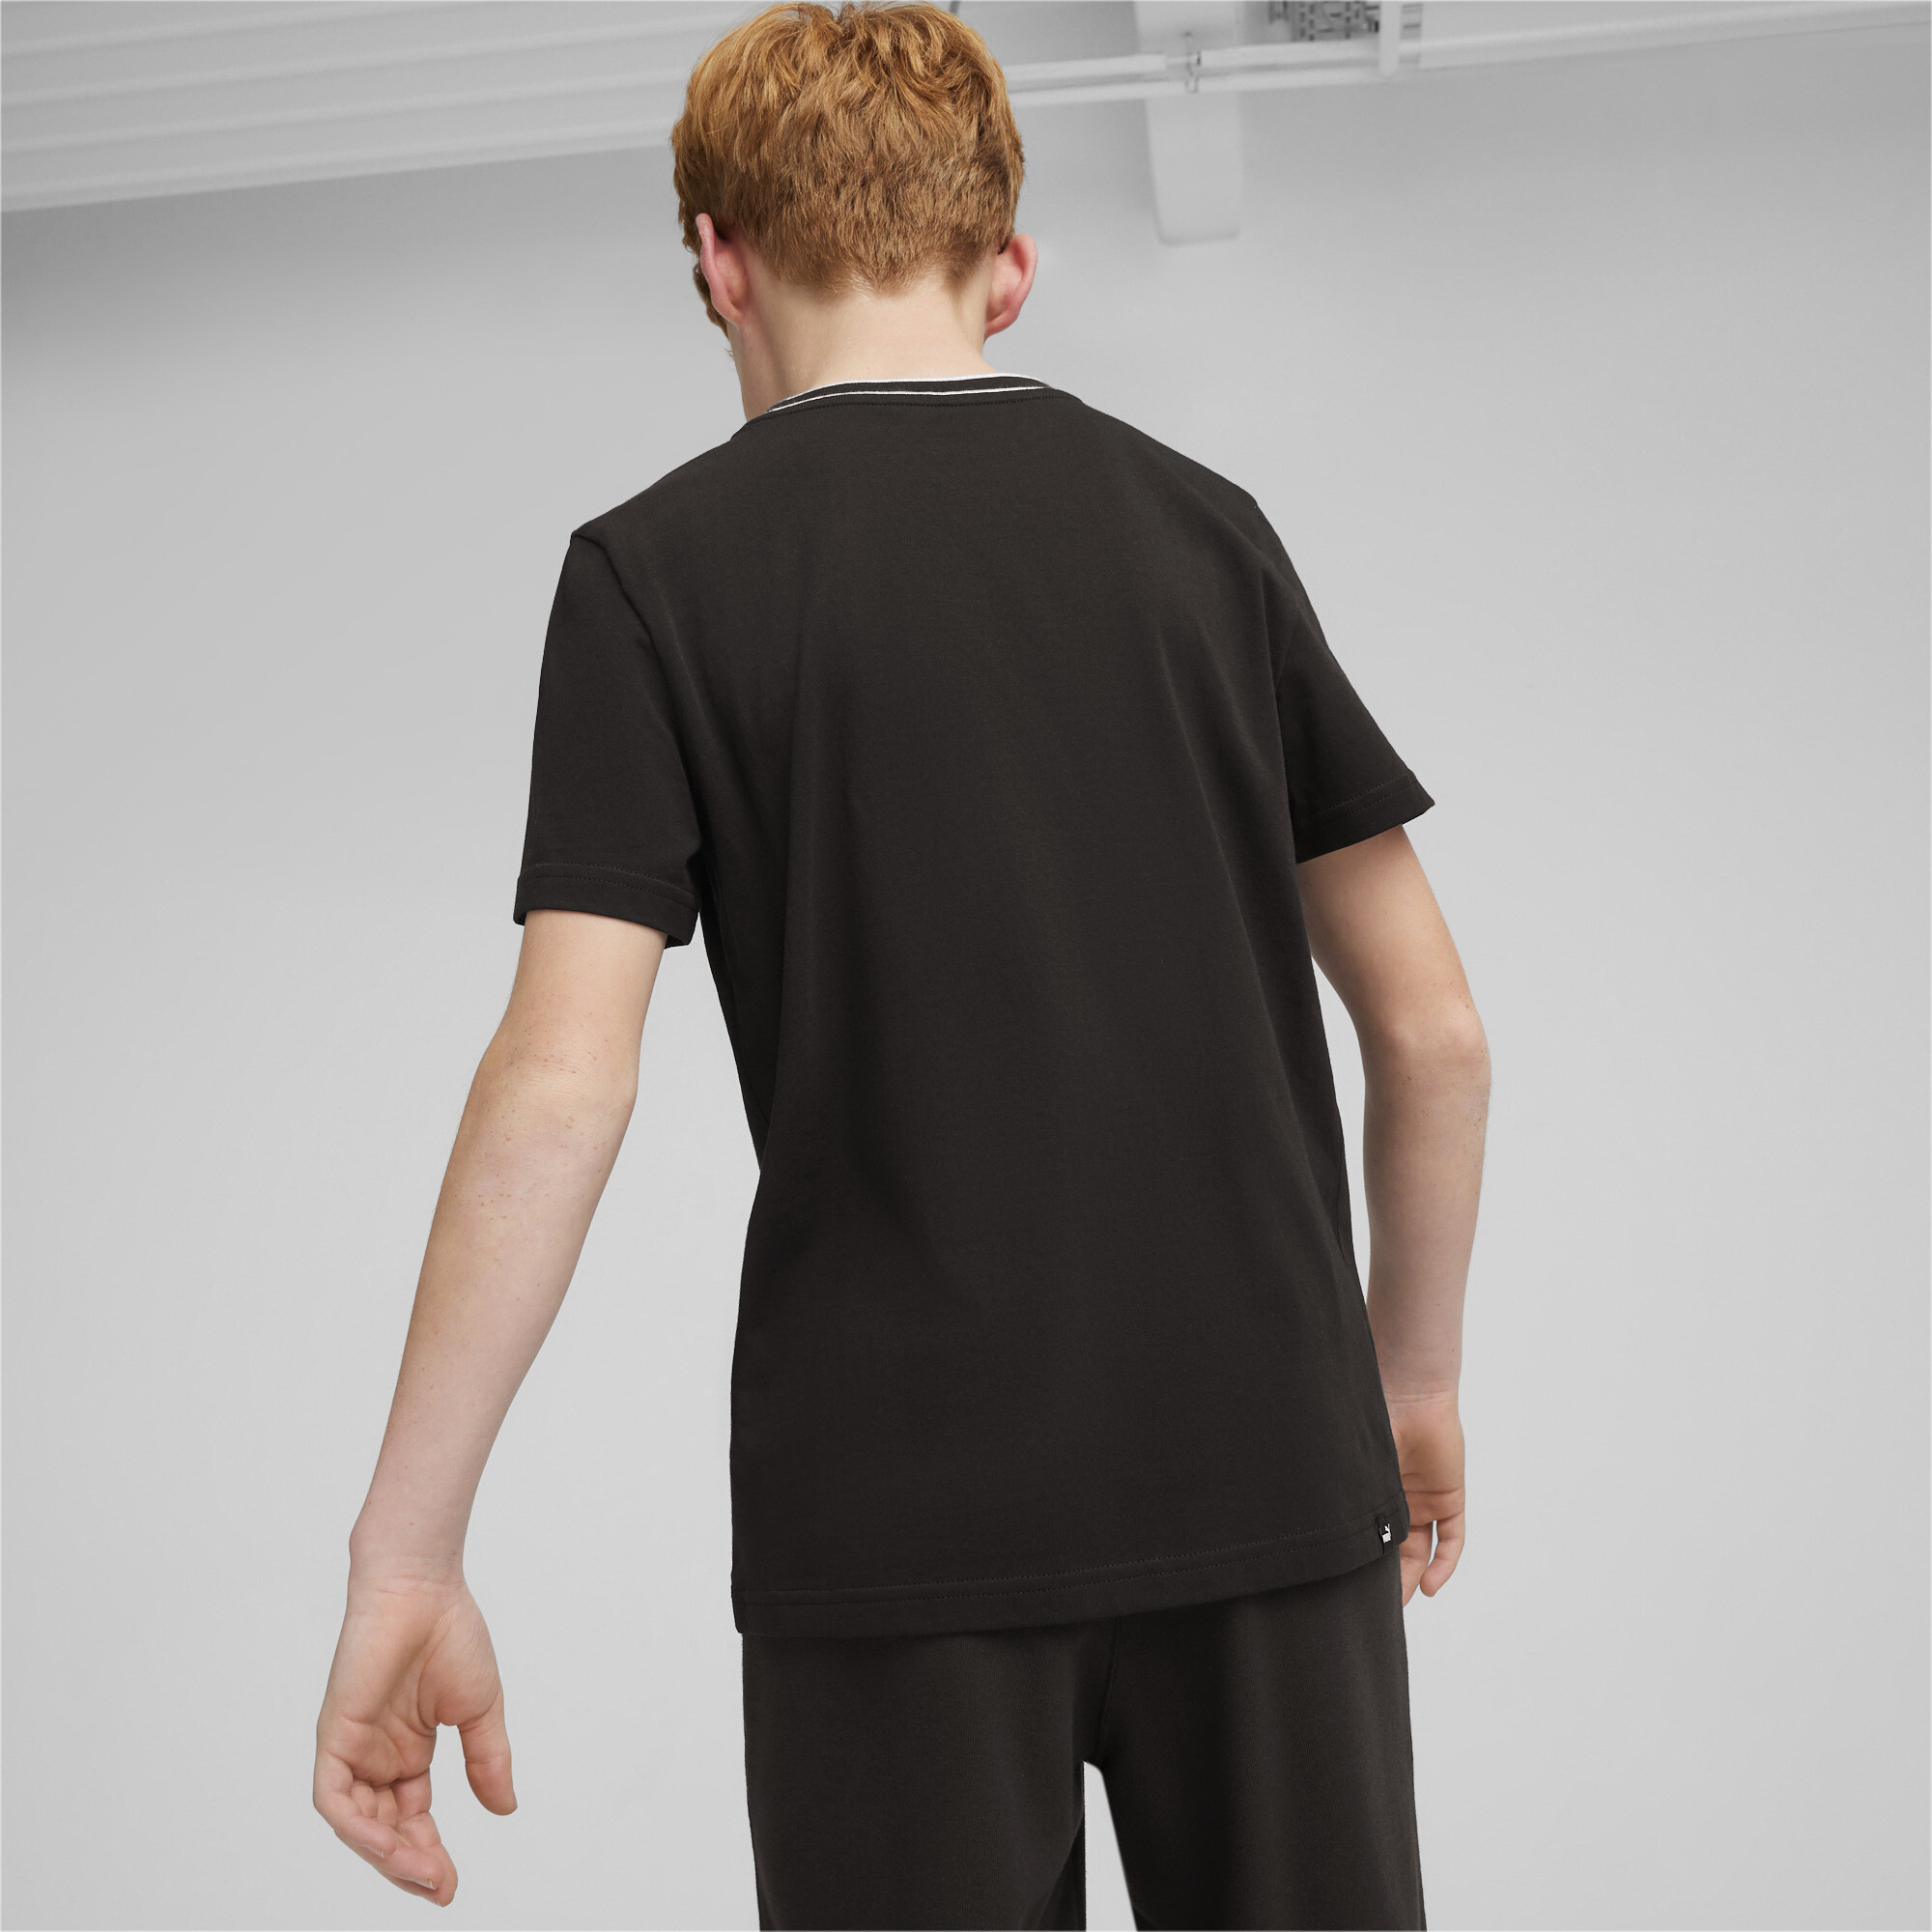 Men's Puma SQUAD Youth T-Shirt, Black, Size 7-8Y, Age